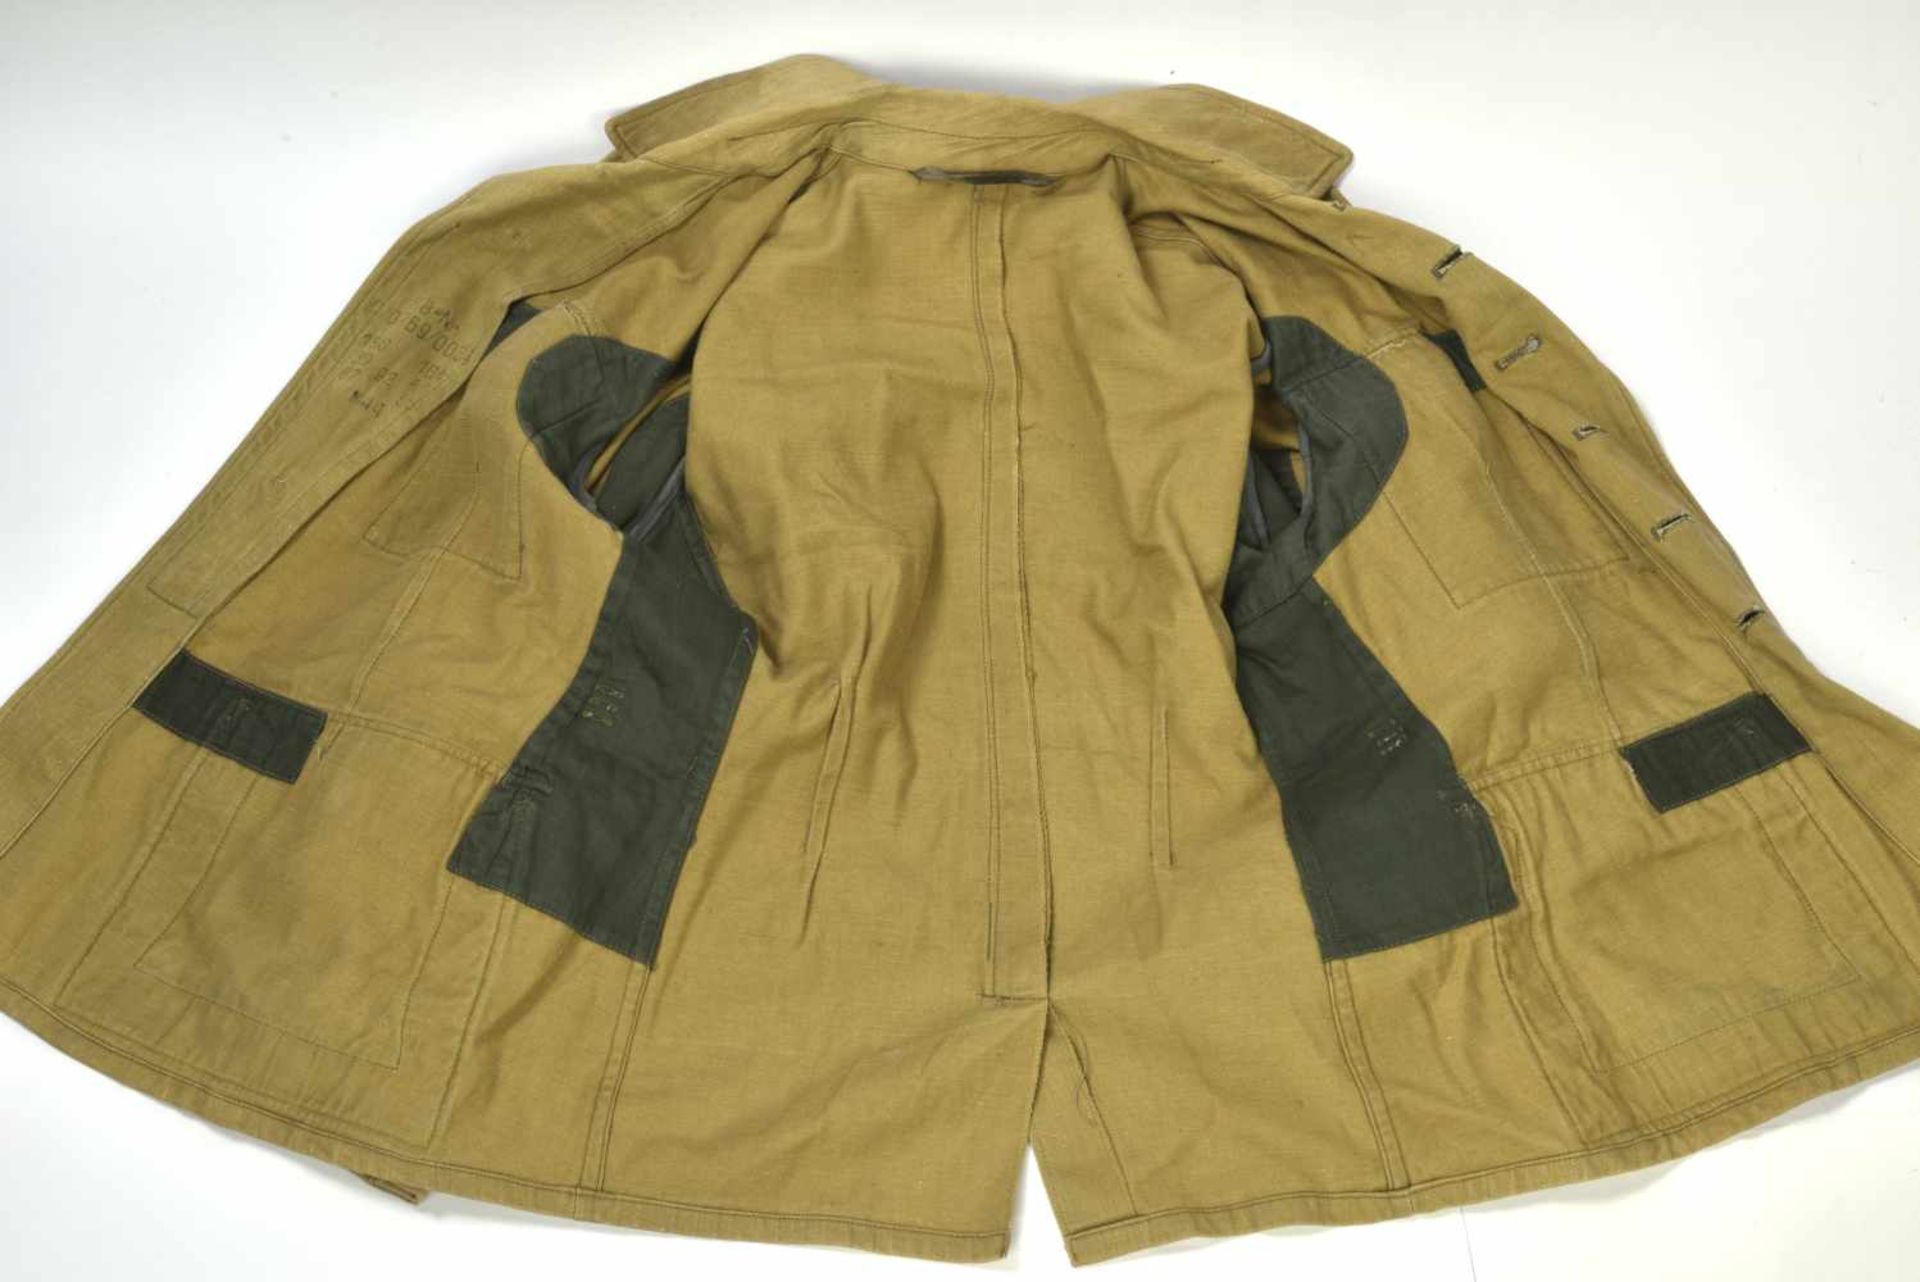 Veste tropical de la Waffen SSVareuse en tissu coton sable, tous les boutons sont présents. - Bild 2 aus 4